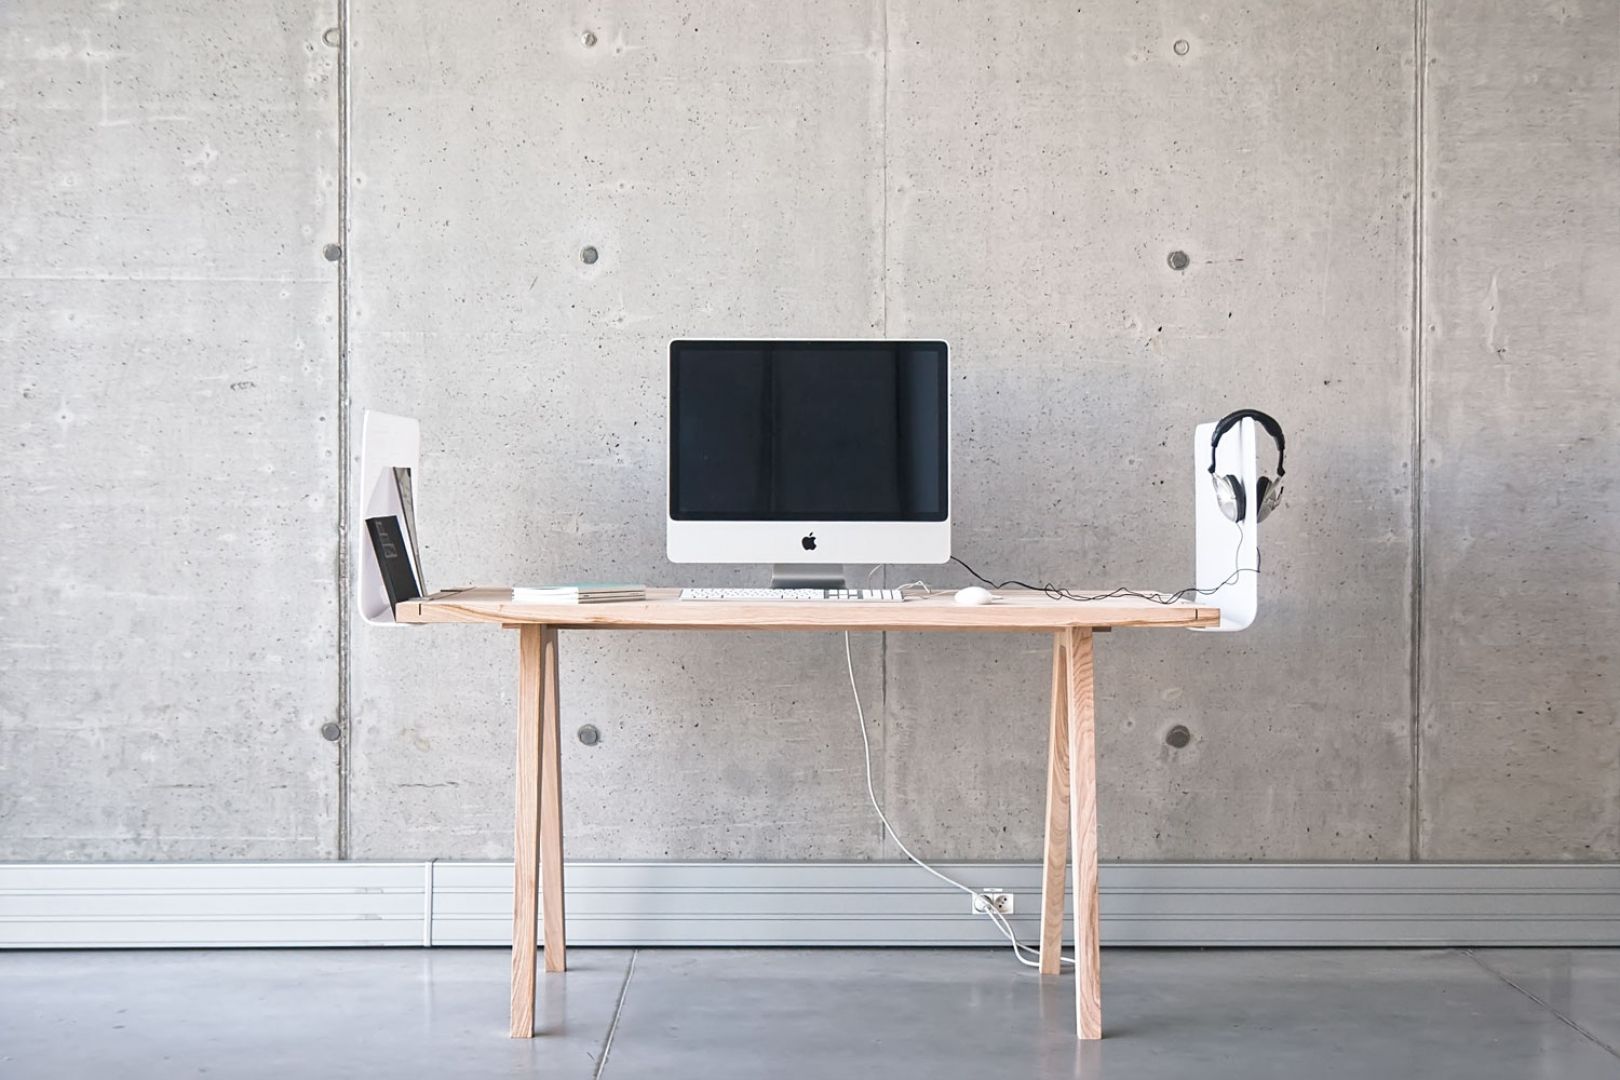 Worknest to zestaw, który pozwala na stworzenie funkcjonalnego i estetycznego miejsca pracy. bazą jest biurko oraz rodzaj parawanu, drabinki. oba wykonane z jasnego drewna.
Fot. Archiwum projektantki 